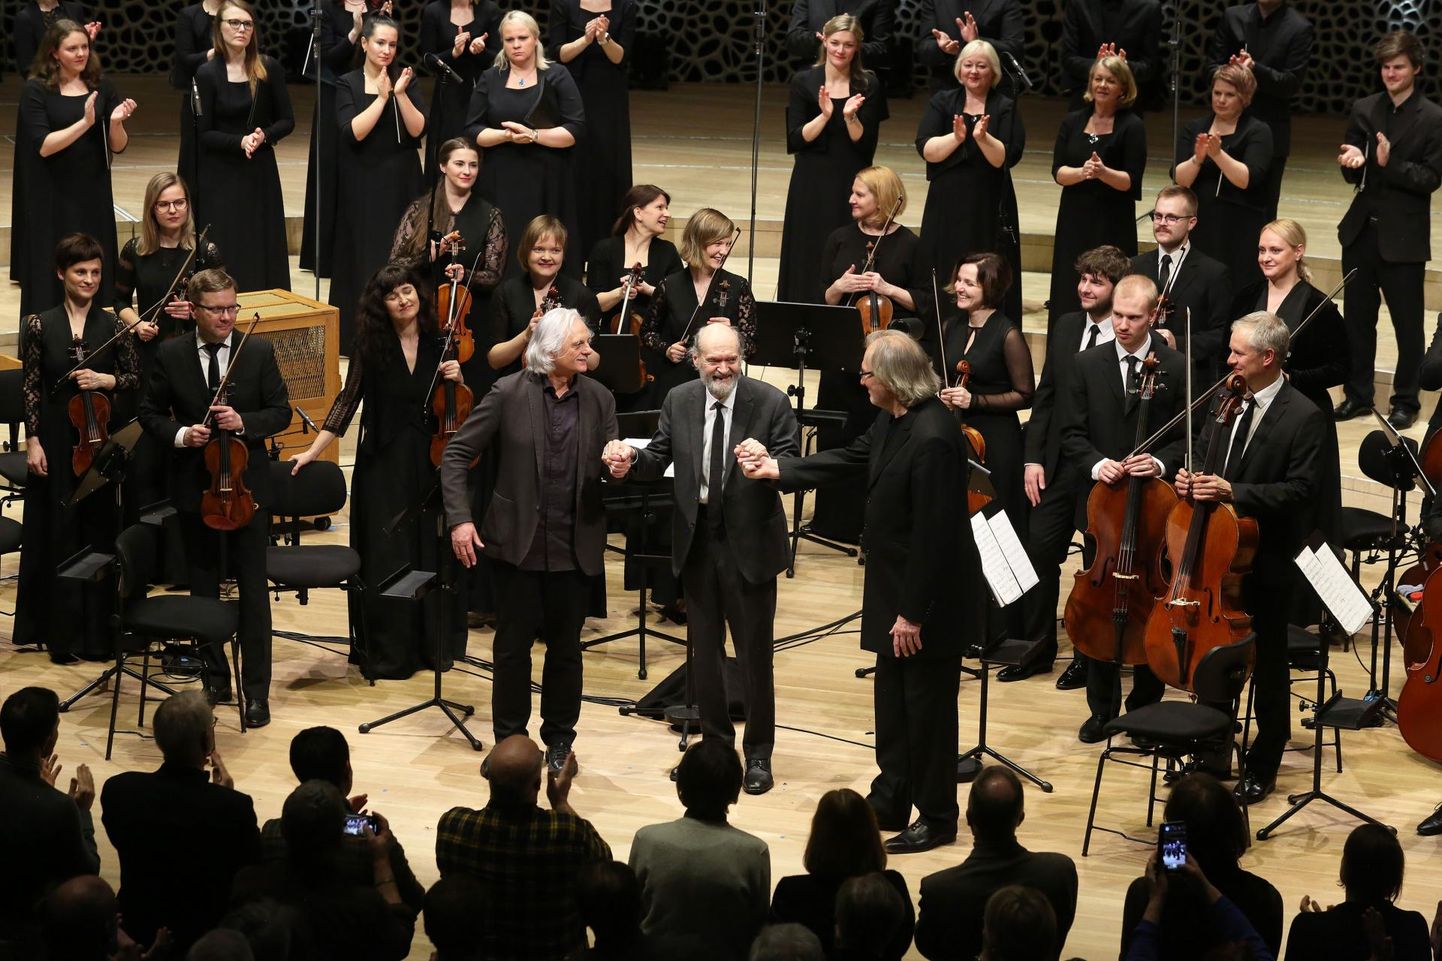 Plaadifirma ECM tähistas 50. juubelit Hamburgi Elbphilharmonies 3. veebruaril Arvo Pärdi loominguga. Fotol ECM Records asutaja Manfred Eicher, helilooja Arvo Pärt ja dirigent Tõnu Kaljuste.